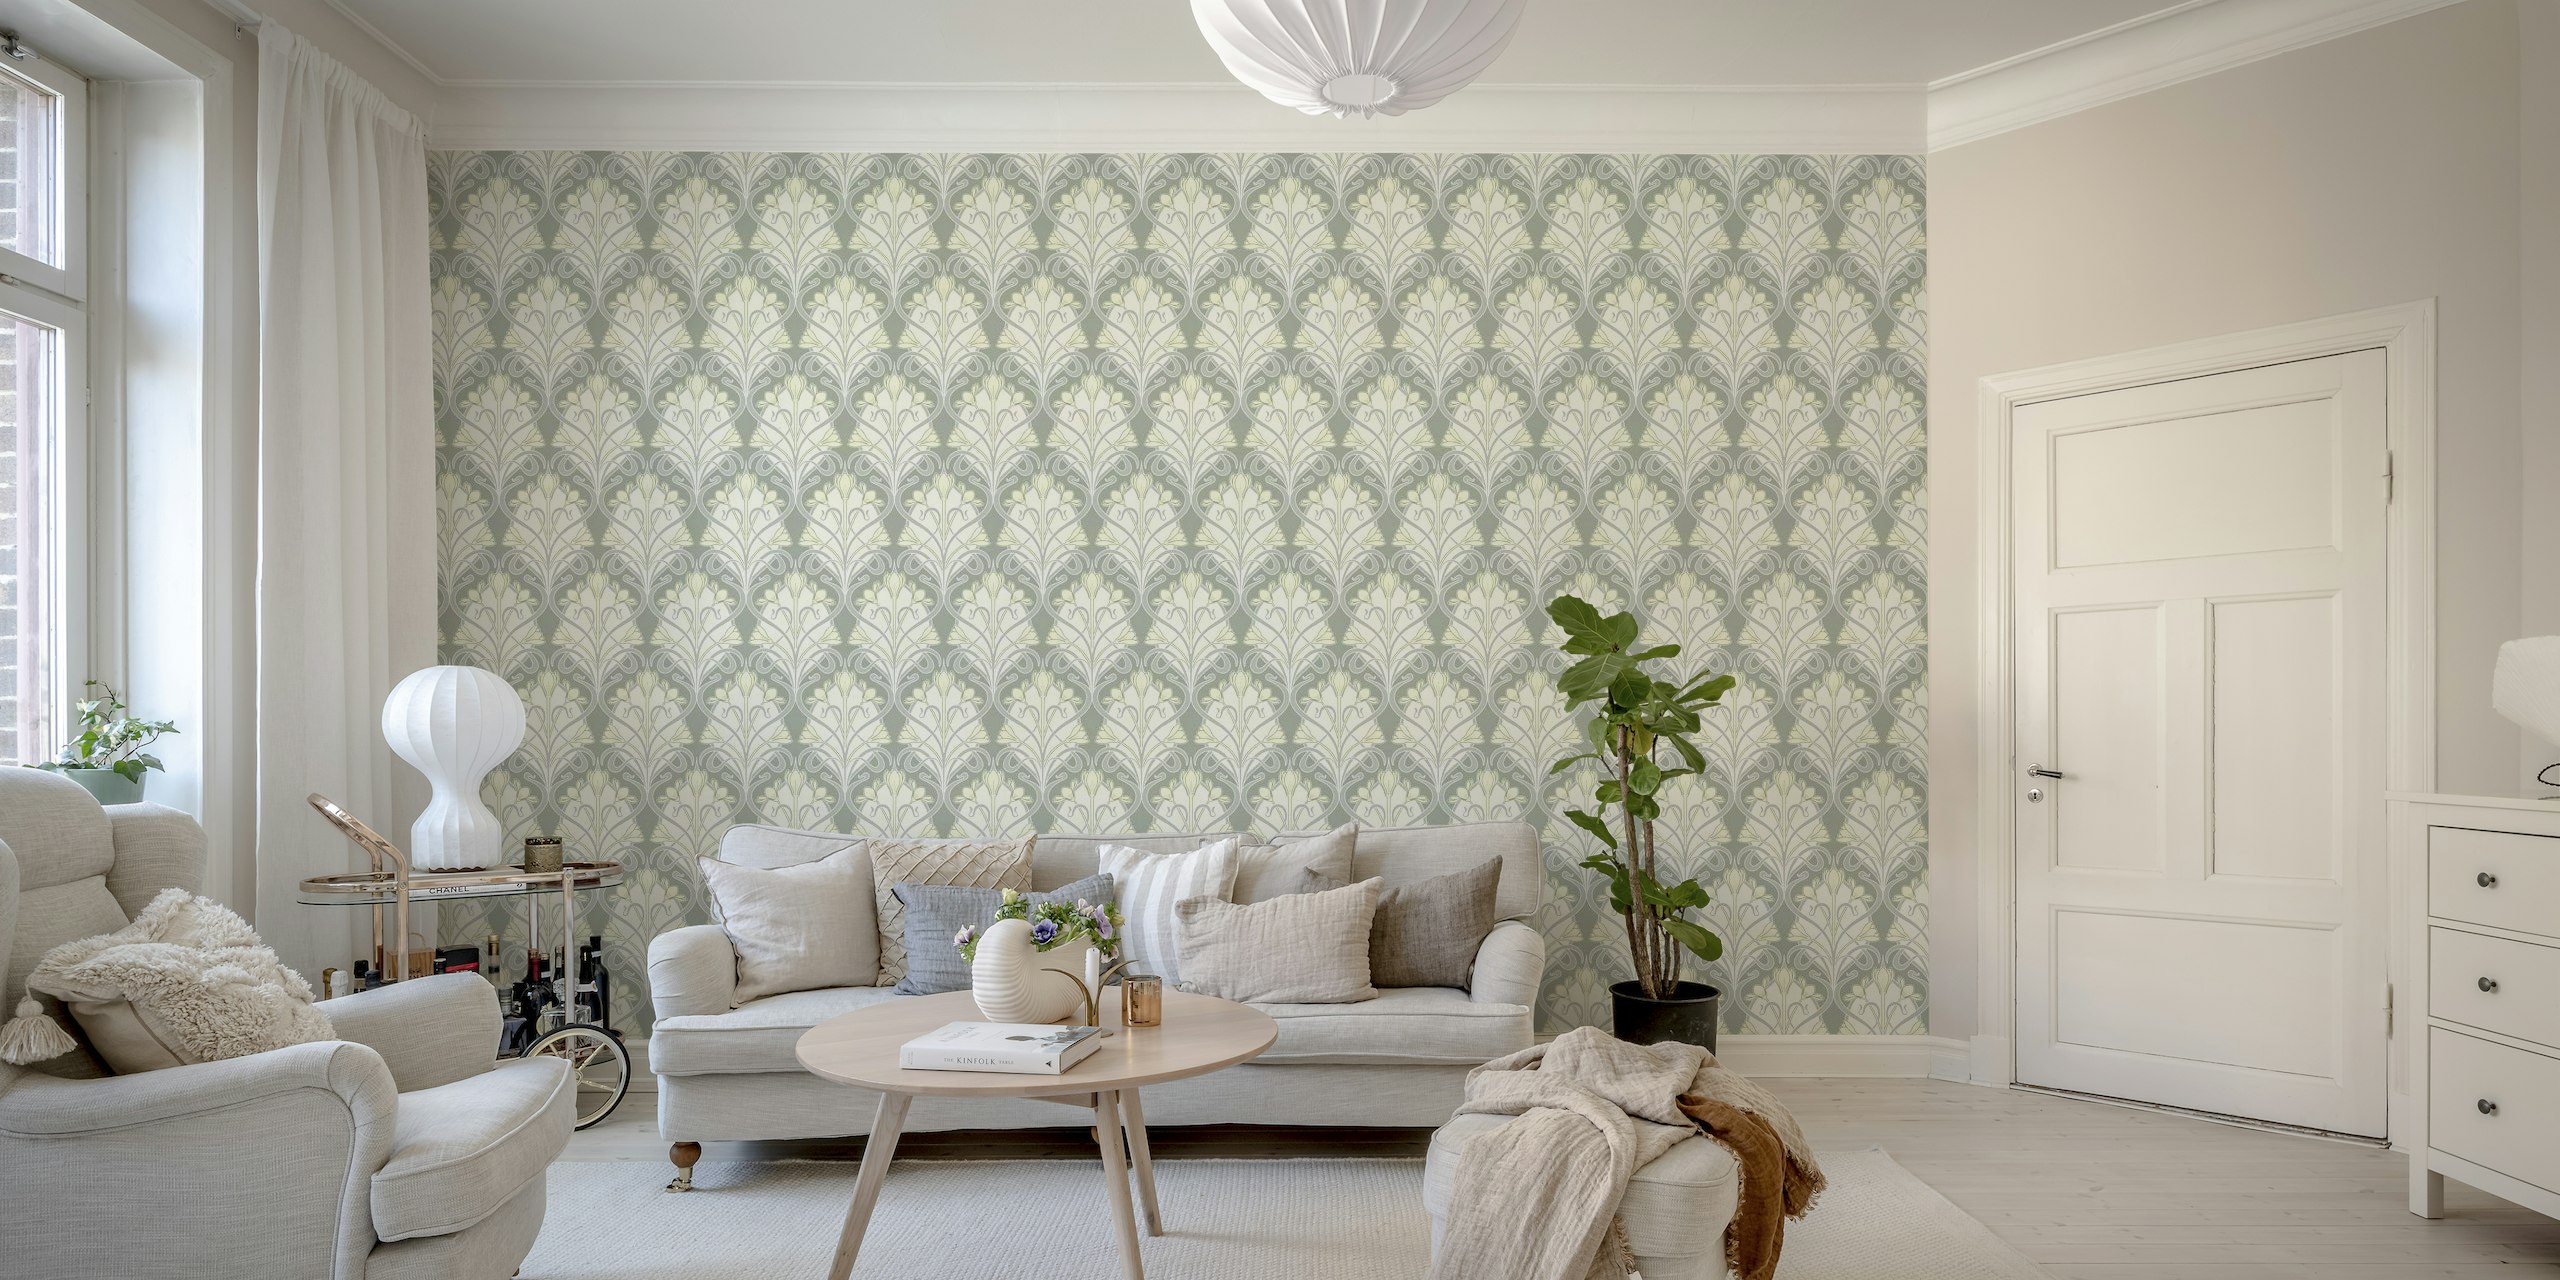 Zidna slika u stilu secesije s cvjetovima šafrana u pupoljcima i elegantnim linijama u simetričnom uzorku.